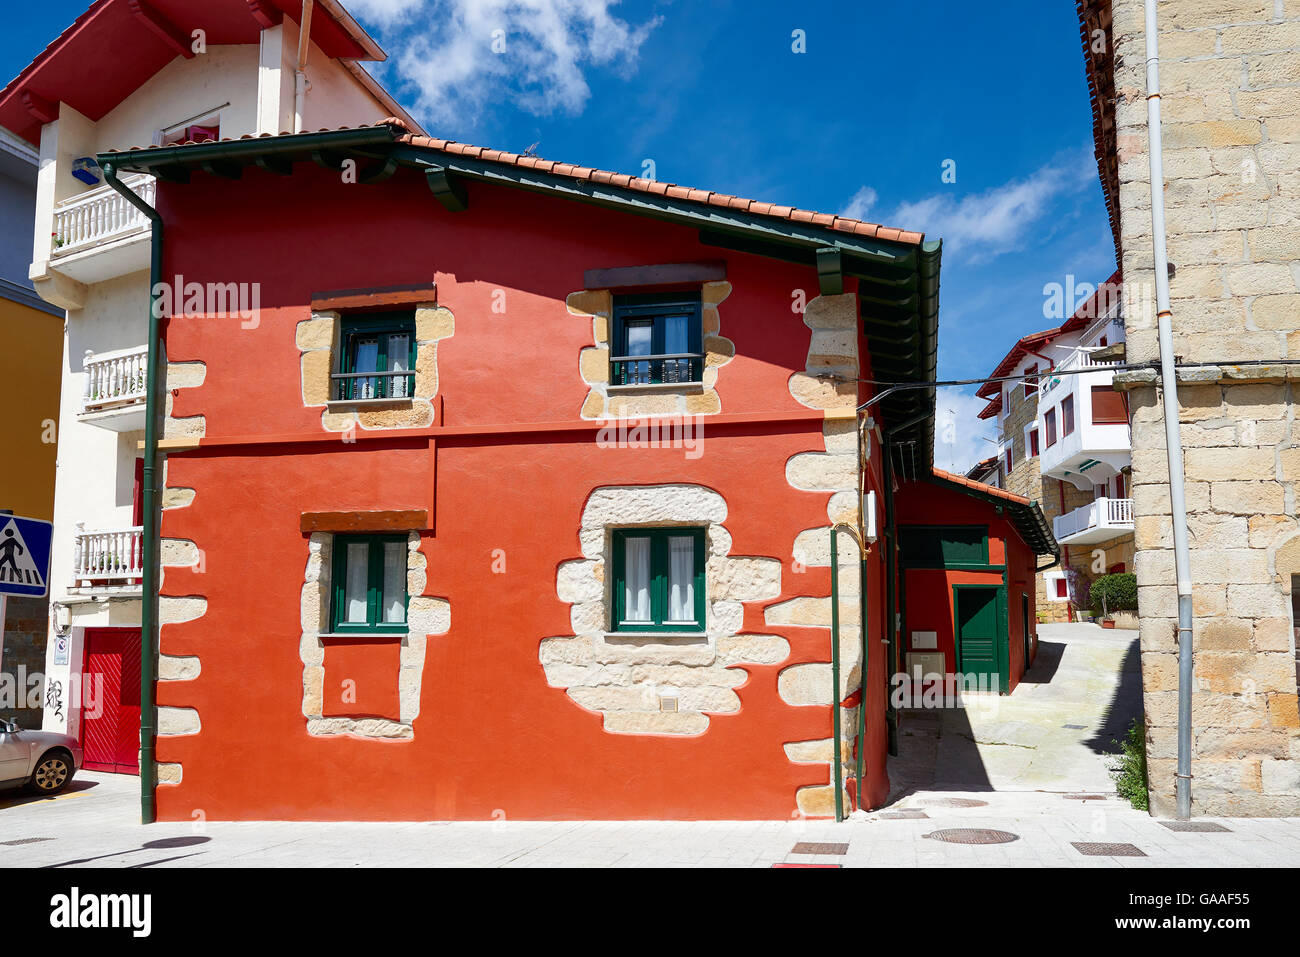 Maison colorée, Usurbil, Guipuzcoa, Pays Basque, Espagne, Europe Banque D'Images